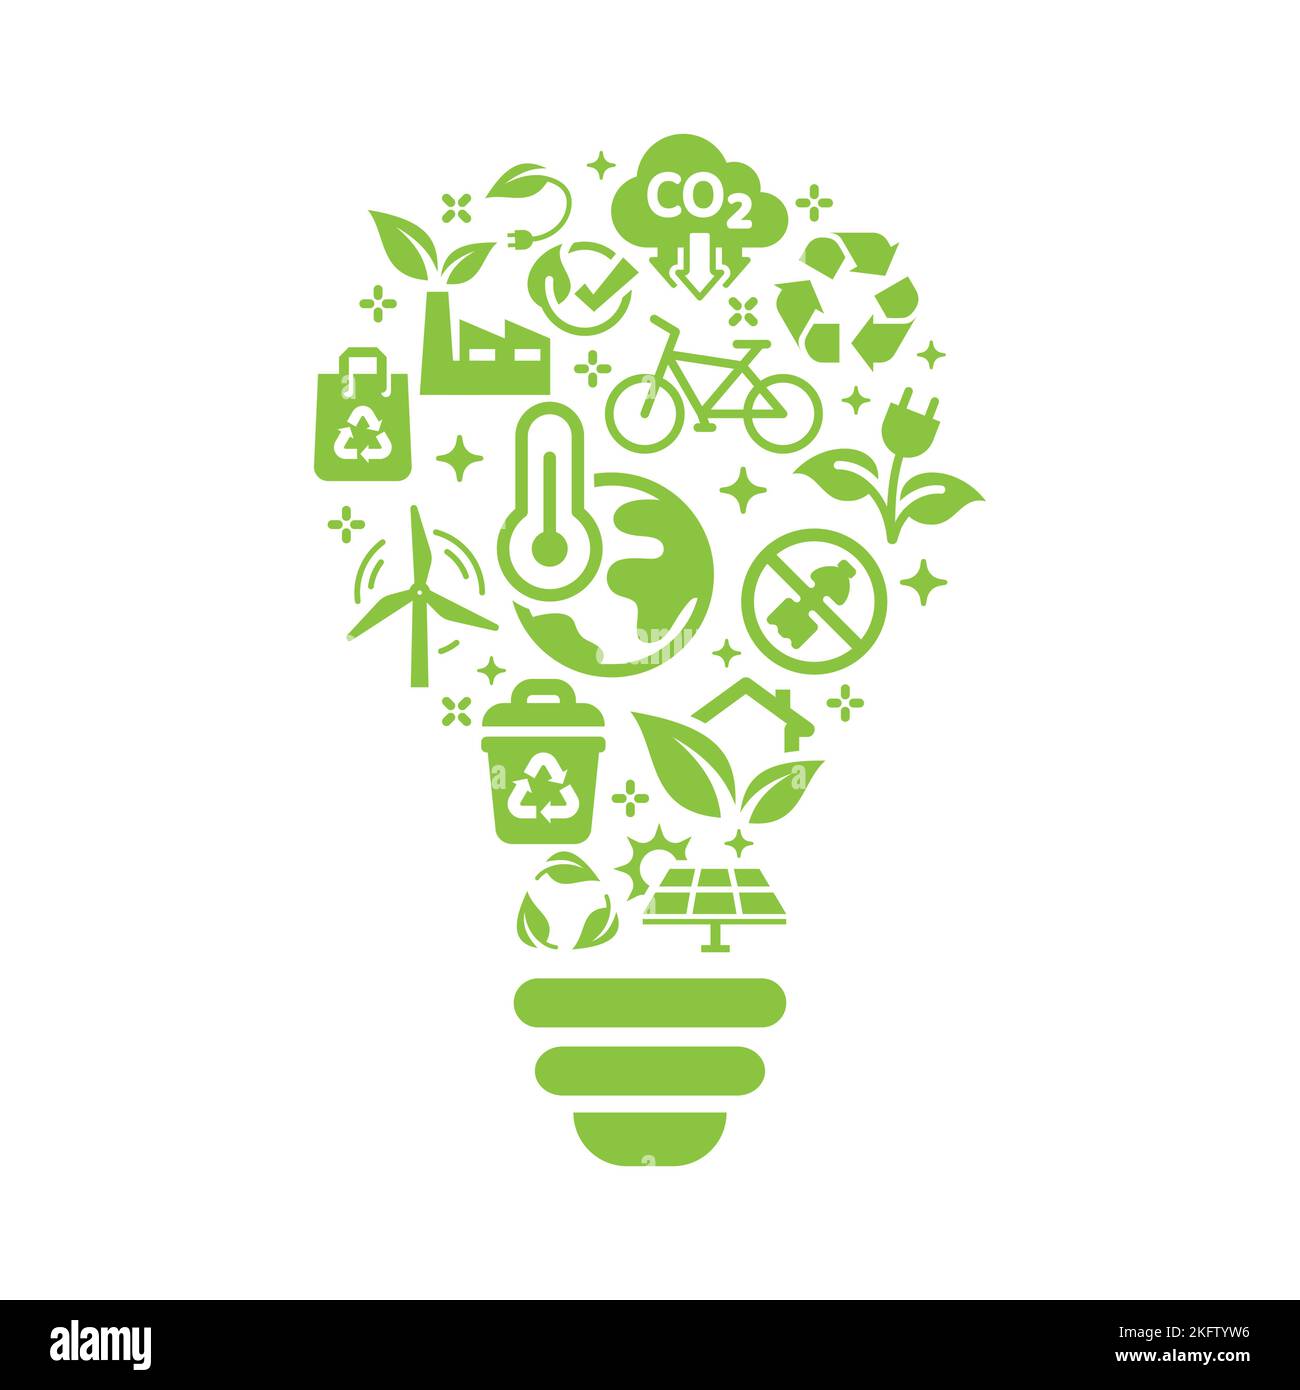 Vektorvorlage für nachhaltige, erneuerbare Ressourcen. Ökologie, globale Erwärmung Umweltsymbole und Symbole in Glühbirnen. Stock Vektor